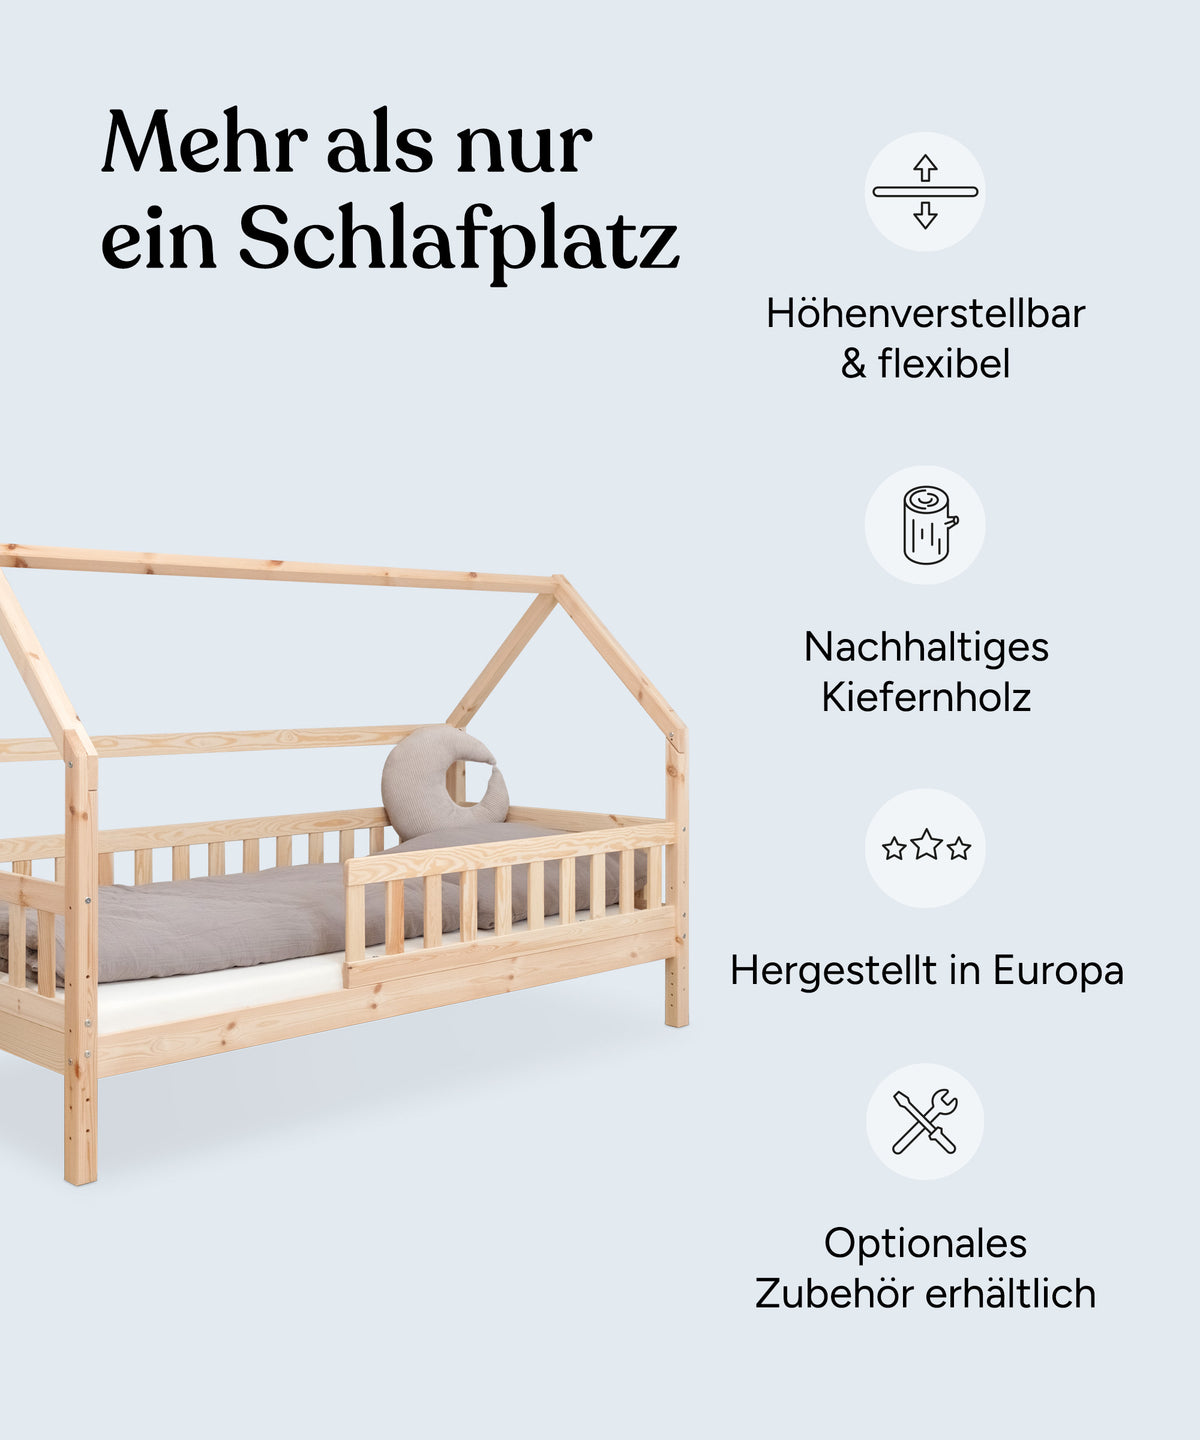 Vorteile Hausbett Kiefer Natur: Höhenverstellbar und flexibel, nachhaltiges Kiefernholz, hergestellt in Europa, optionales Zubehör erhältlich.